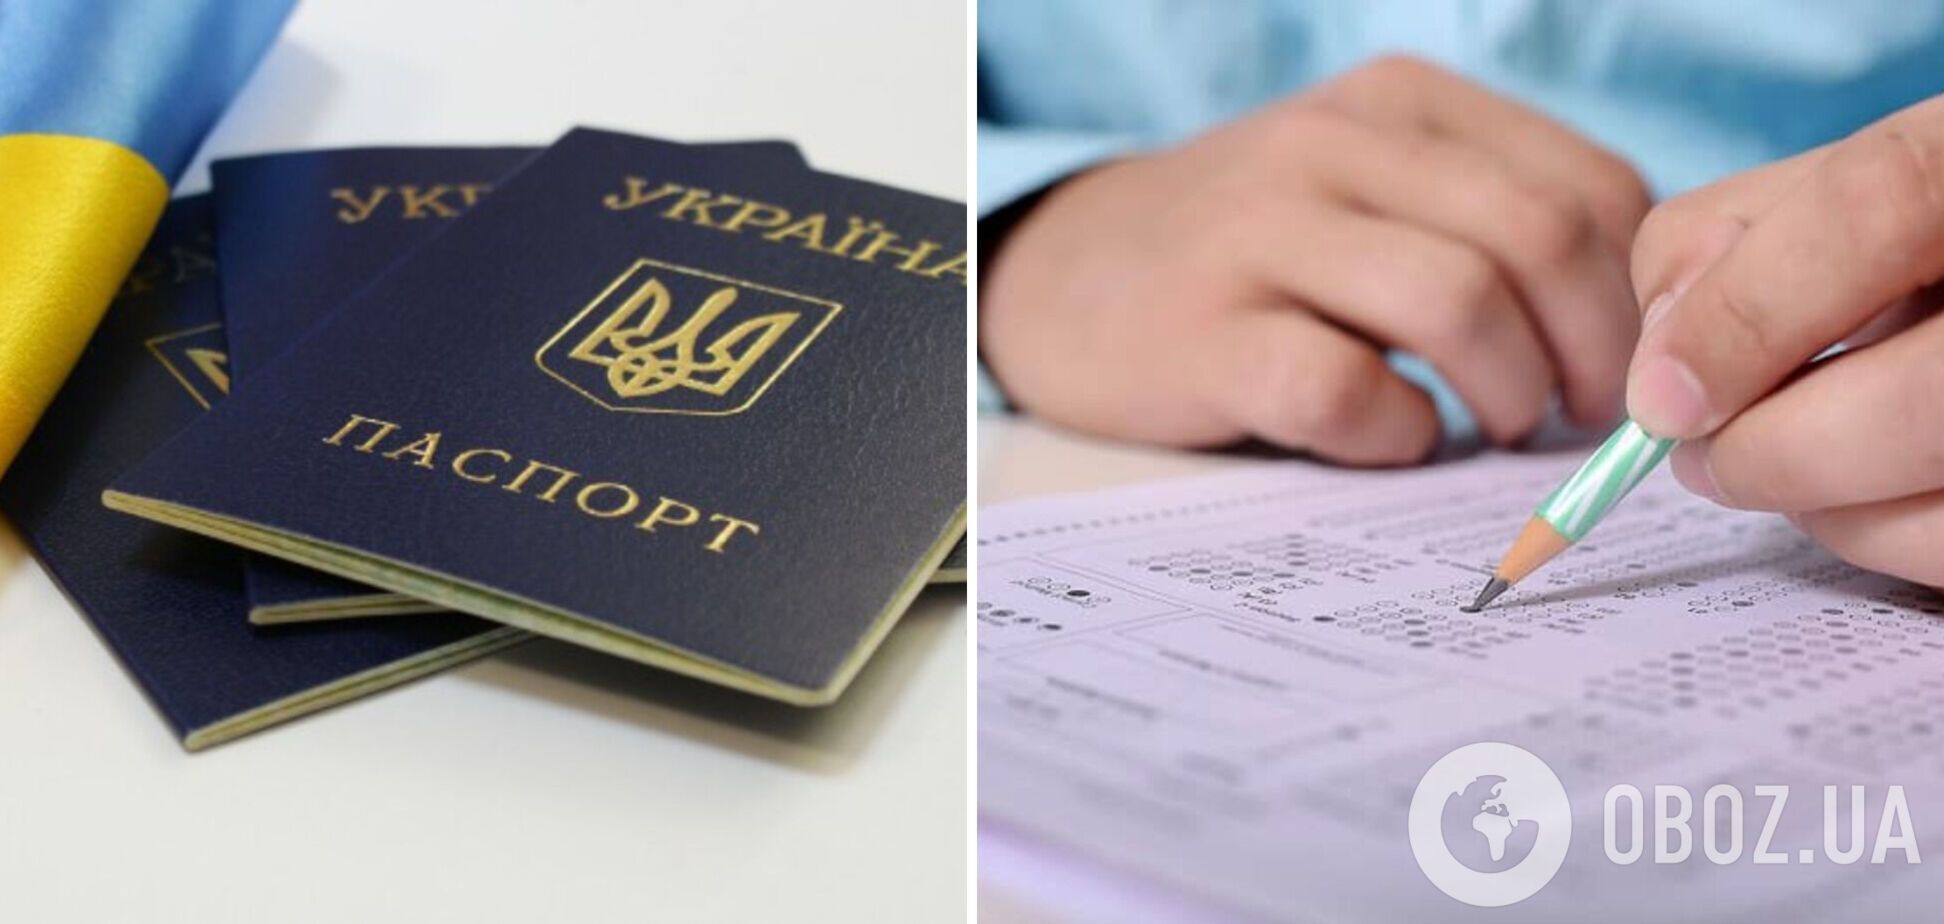  В Україні умовою прийняття до громадянства буде складання іспитів, зокрема на володіння українською мовою: деталі рішення 